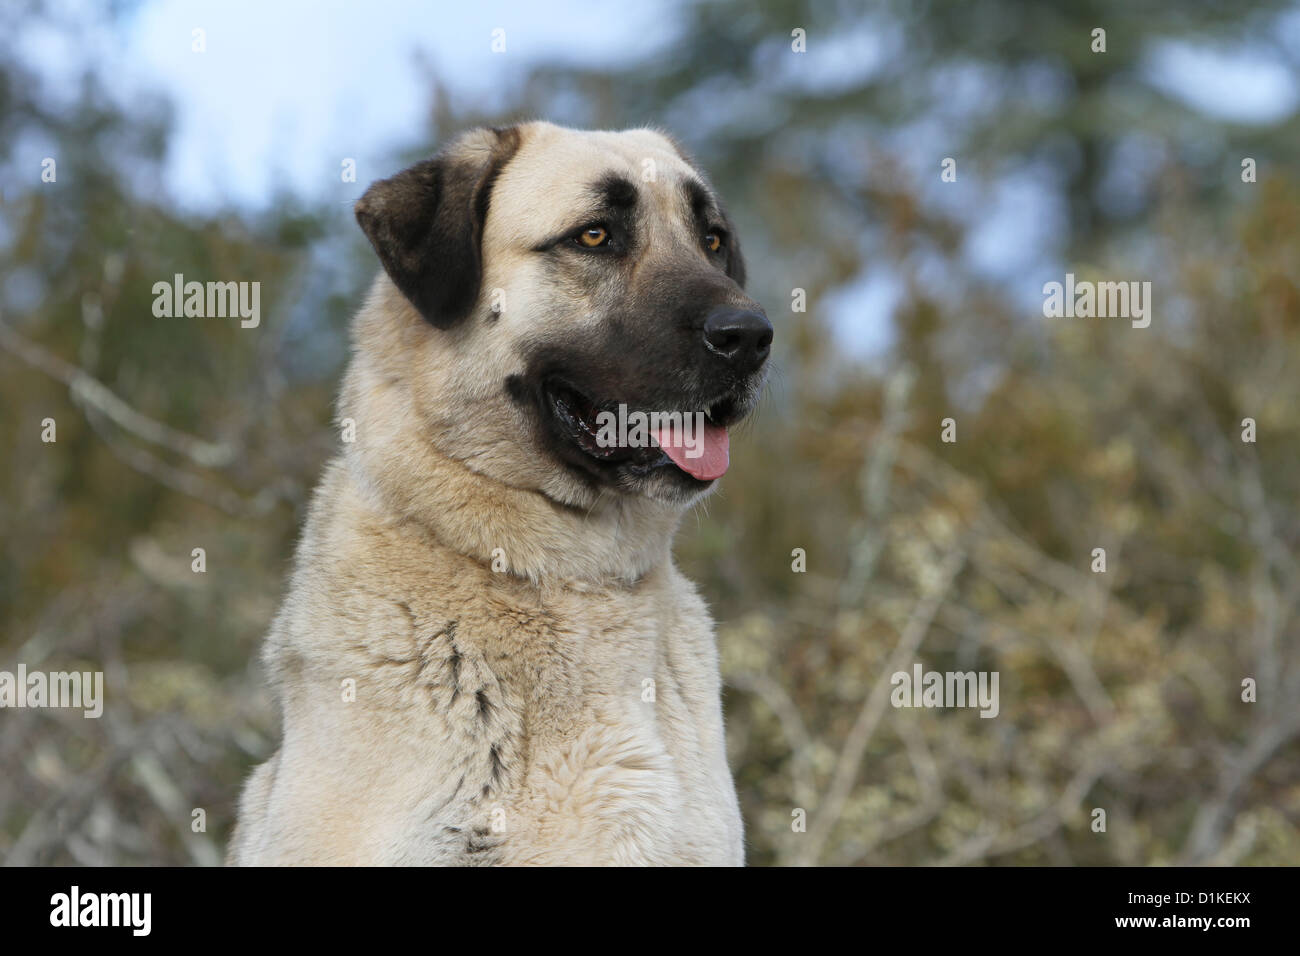 Dog Anatolian Shepherd dog / Kangal / Turkish Karabash adult portrait Stock Photo